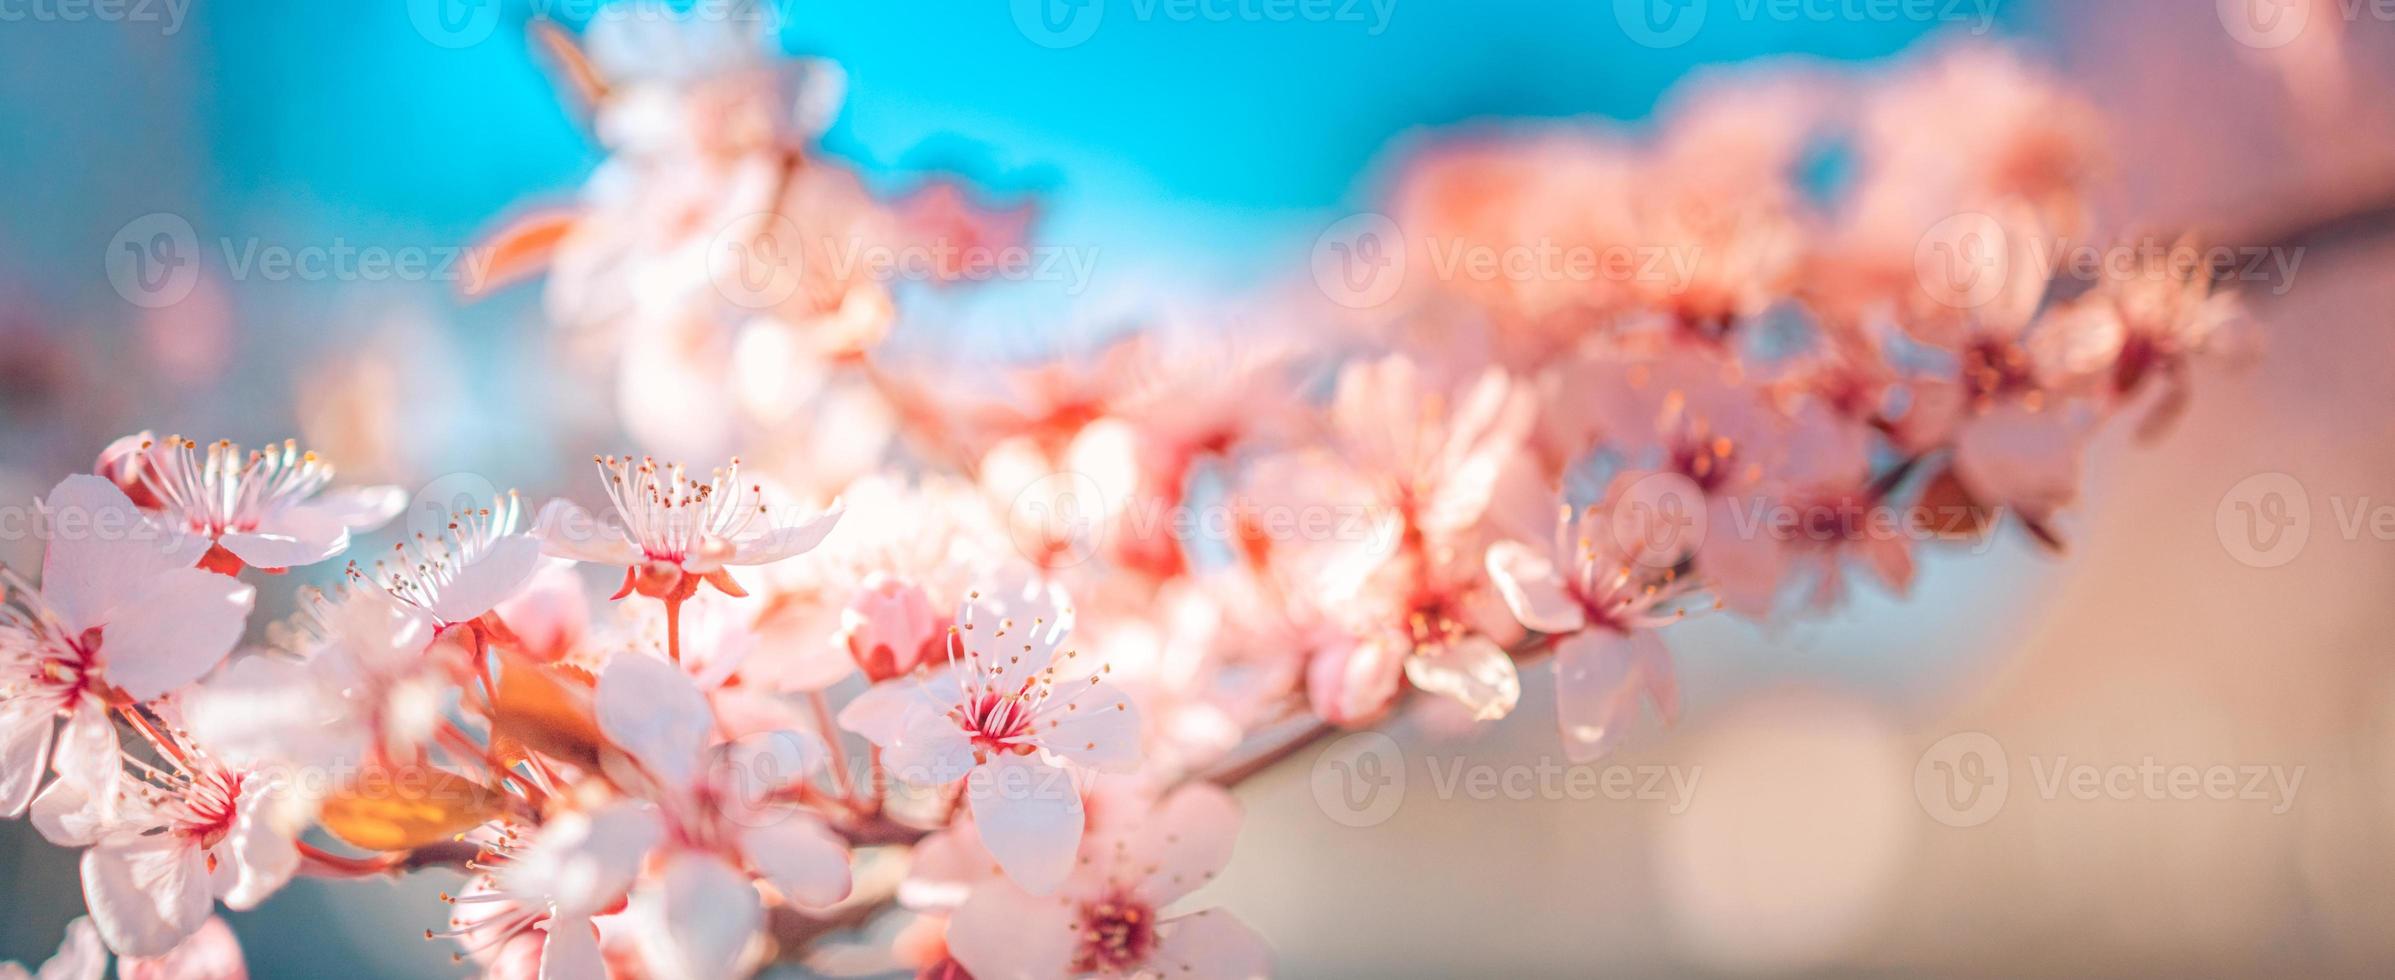 Increíble primer plano de la naturaleza, cerezo en flor en el fondo borroso del bokeh. flores rosadas de sakura, increíble naturaleza romántica de ensueño colorida. diseño de banner floral de amor foto